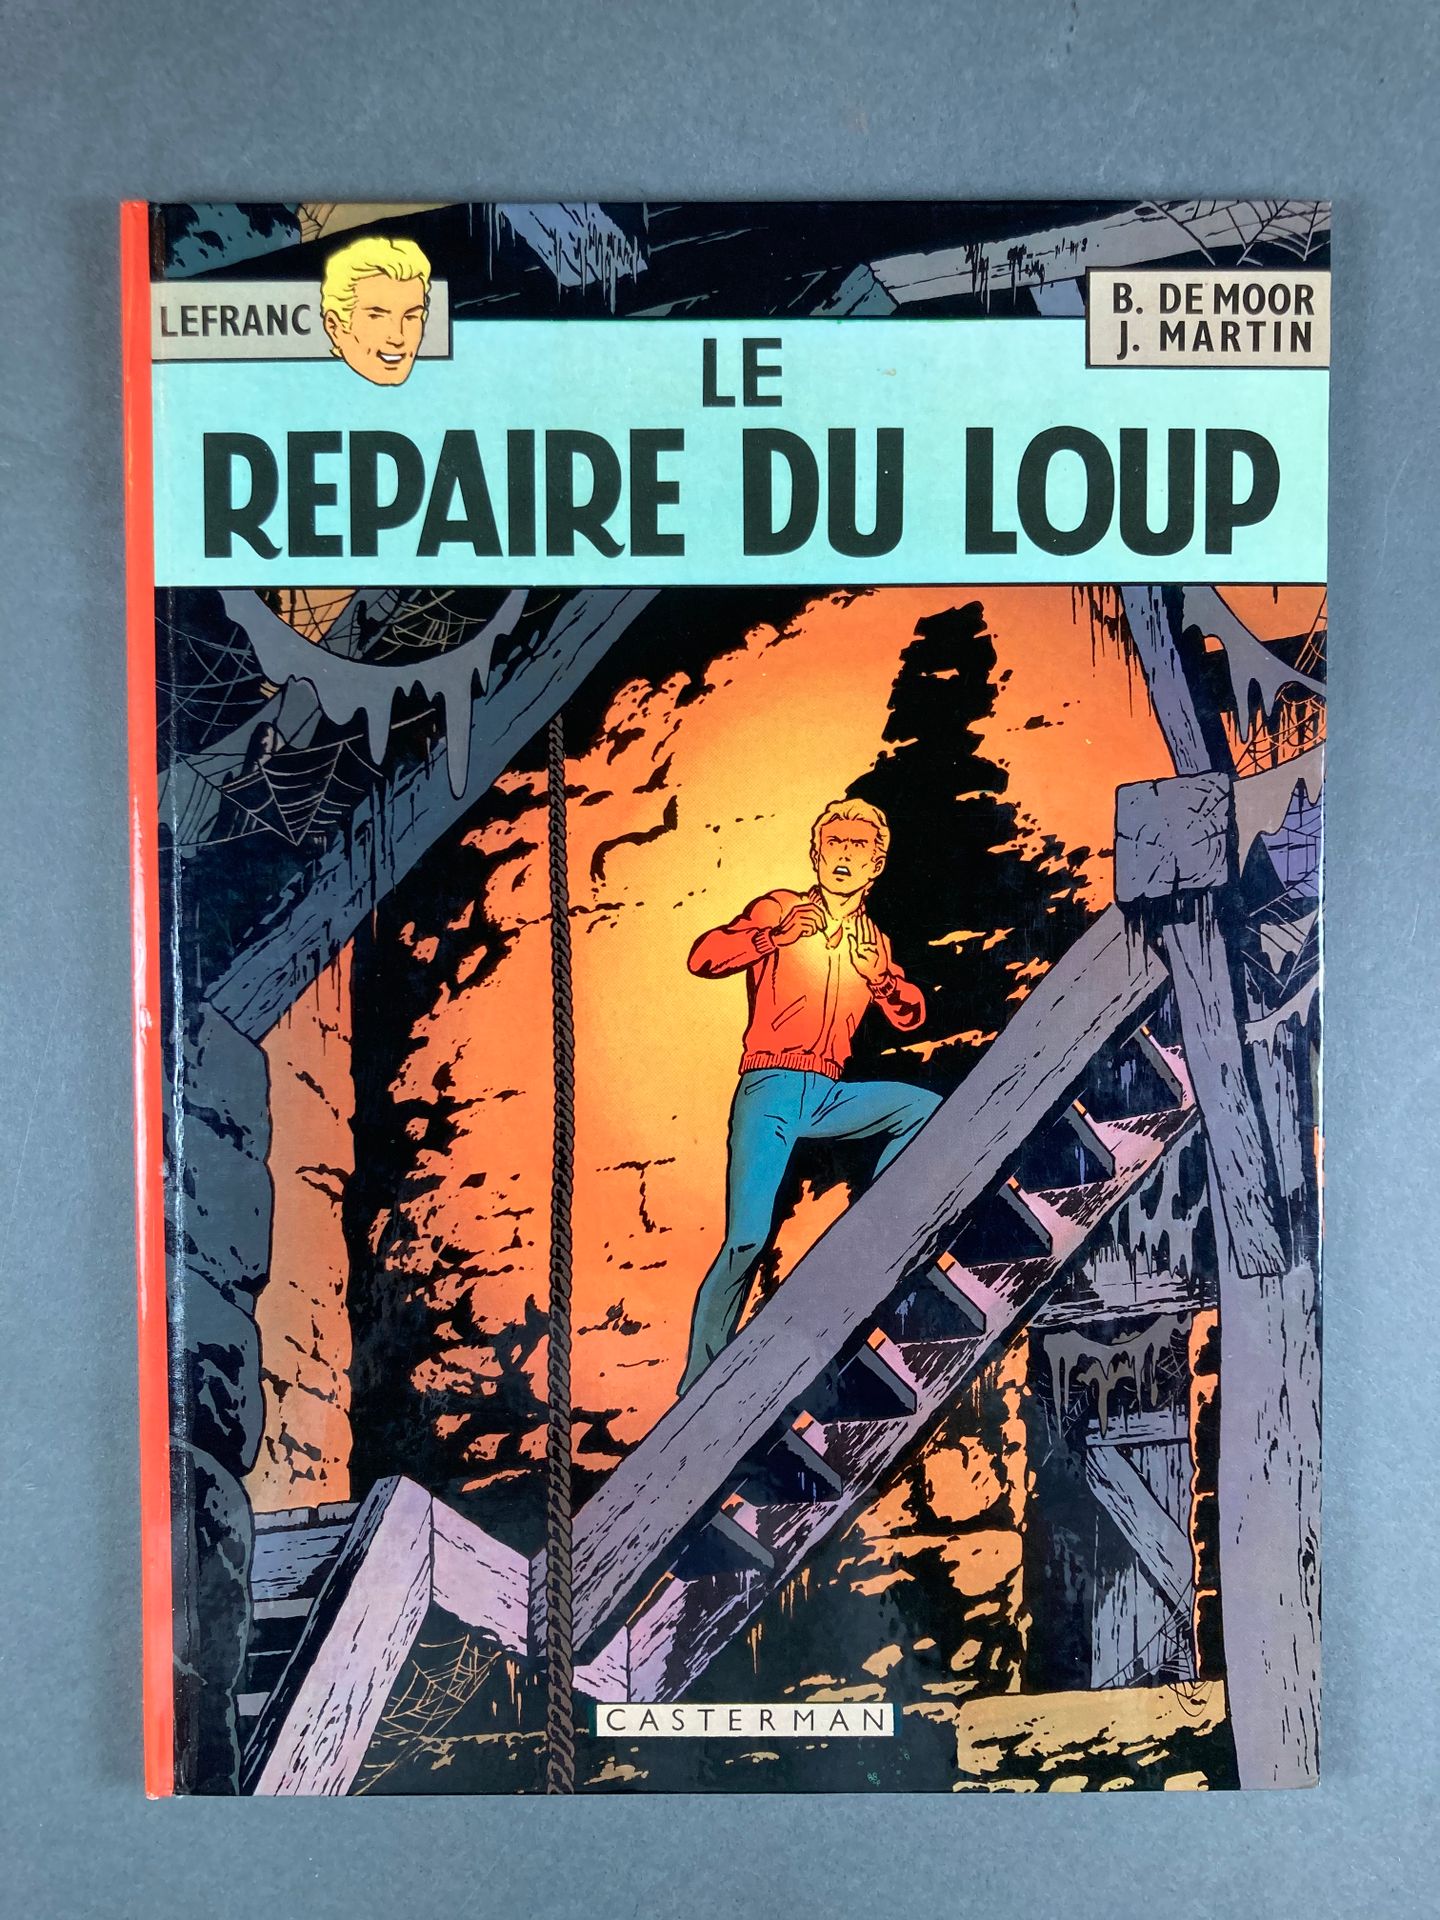 Martin-De Moor - Lefranc Le repaire du loup, 4, 1974, EO, by Casterman, TBE